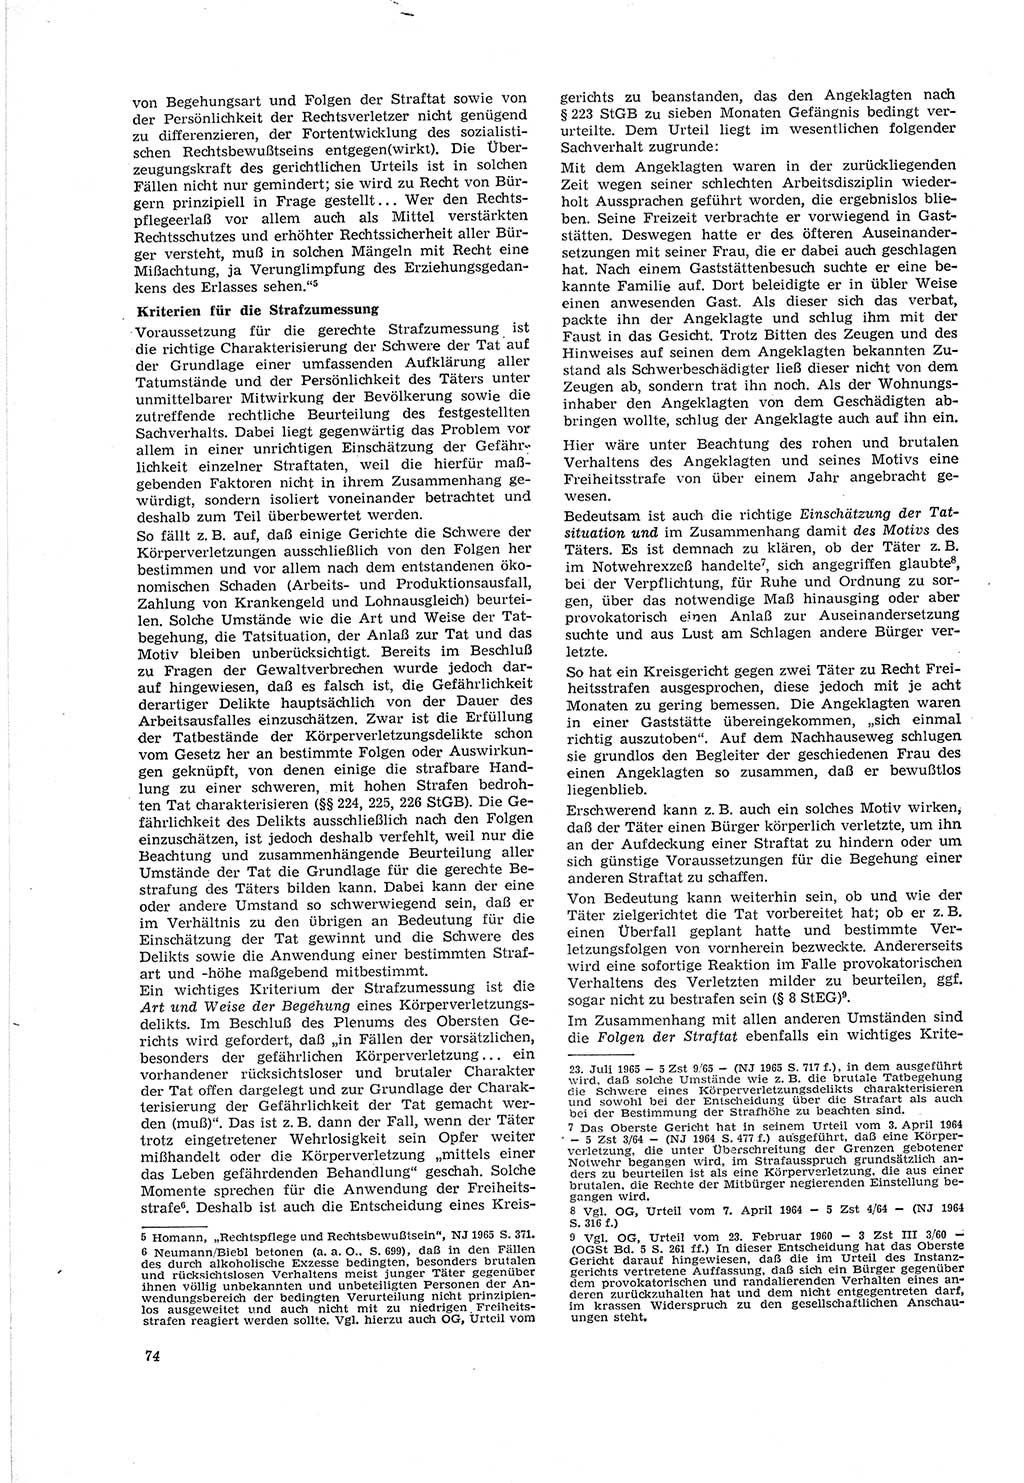 Neue Justiz (NJ), Zeitschrift für Recht und Rechtswissenschaft [Deutsche Demokratische Republik (DDR)], 20. Jahrgang 1966, Seite 74 (NJ DDR 1966, S. 74)